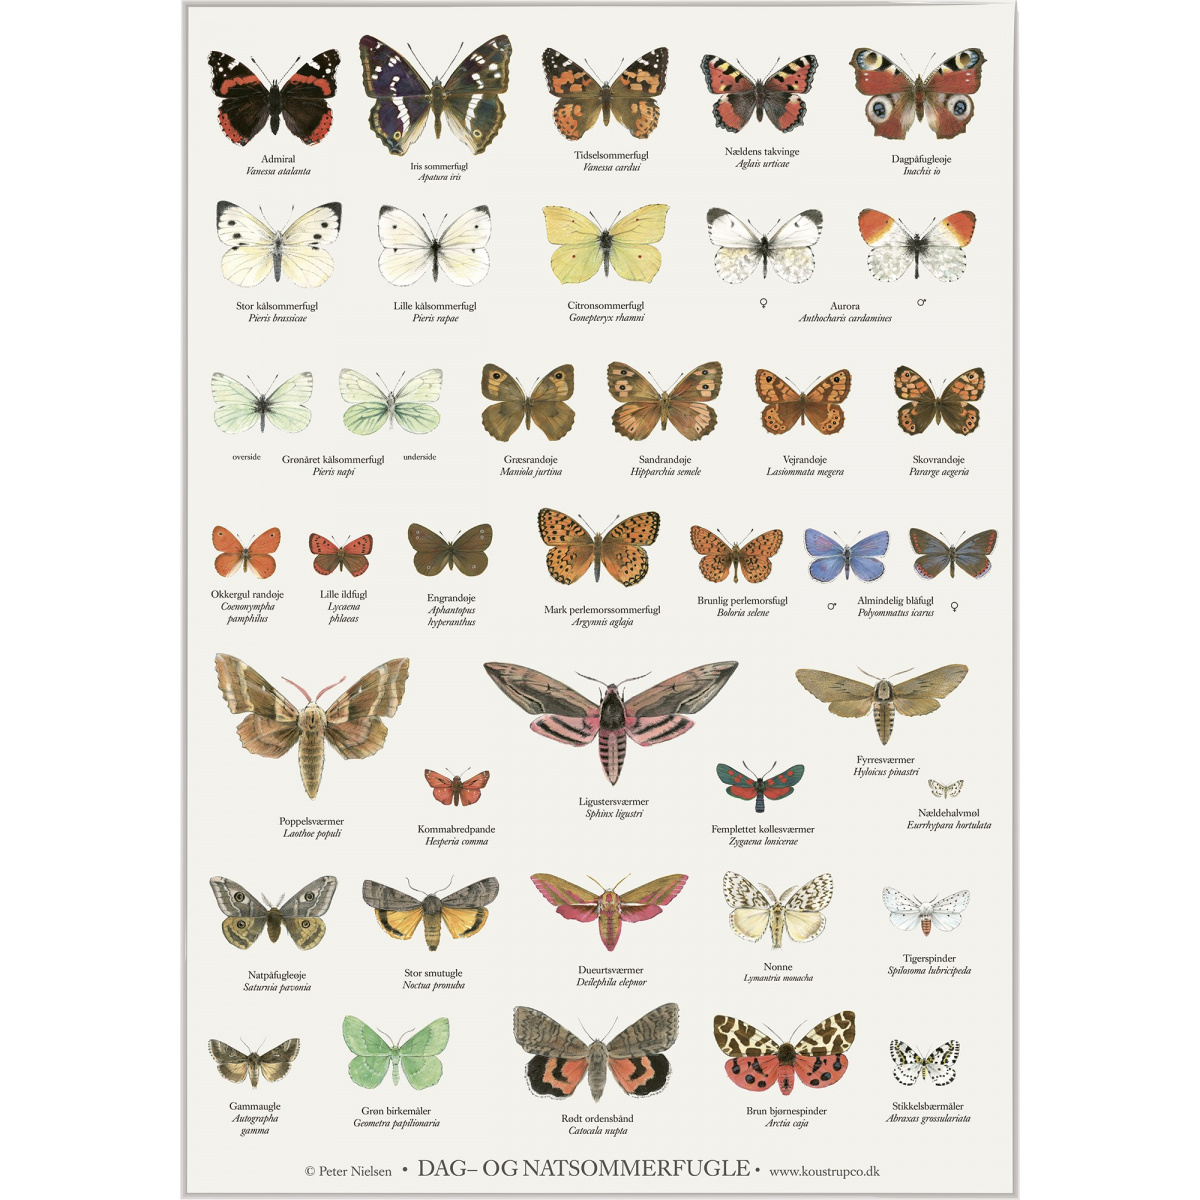 Koustrup & Co. plakat i A4 - sommerfugle